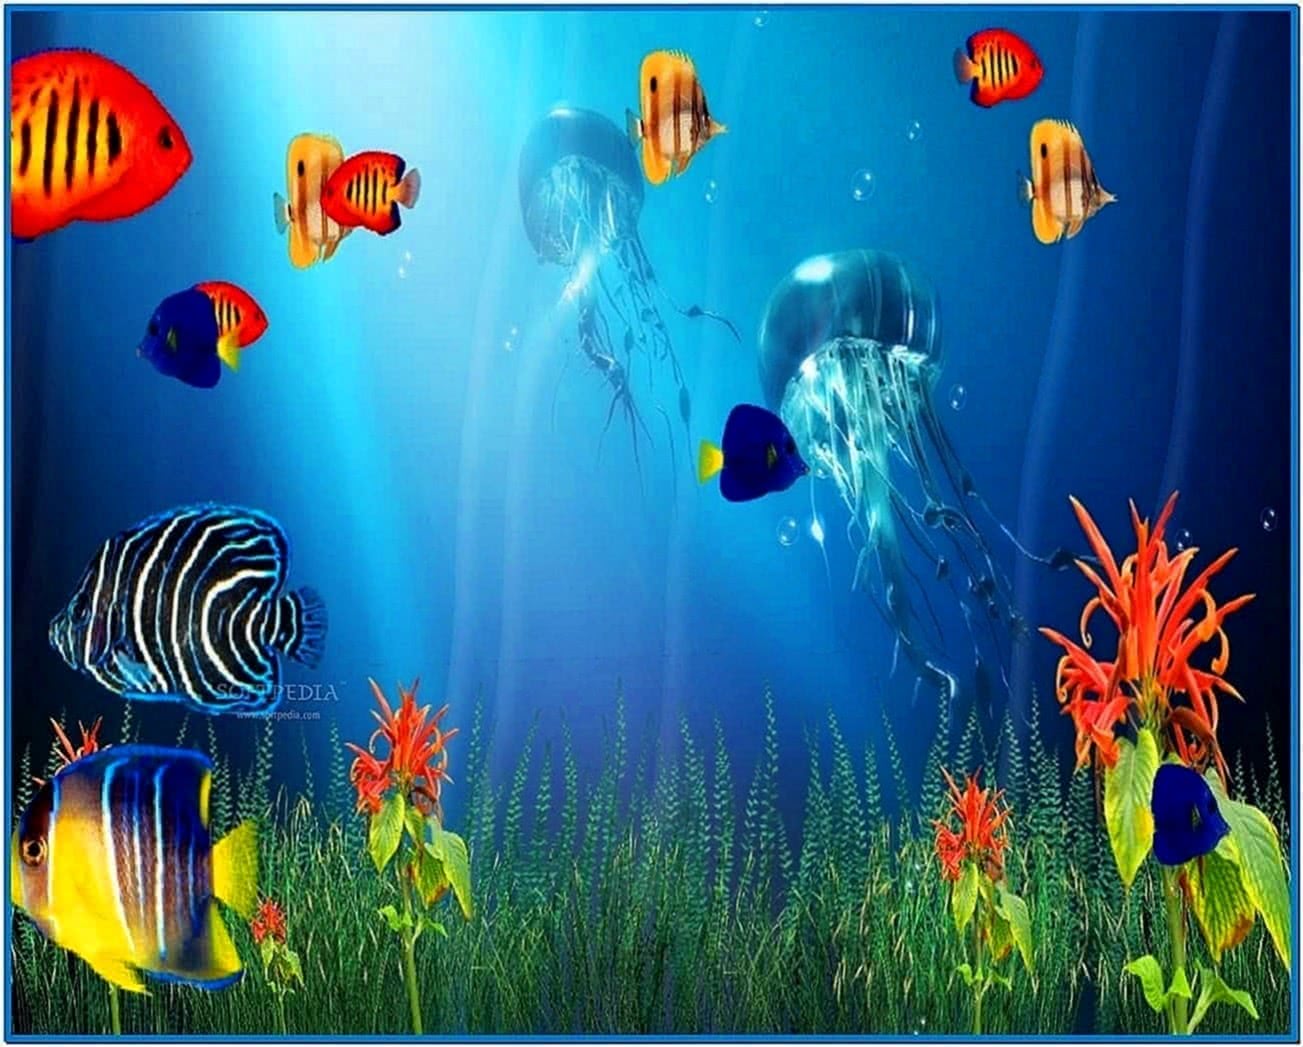 marine aquarium screensaver windows 7